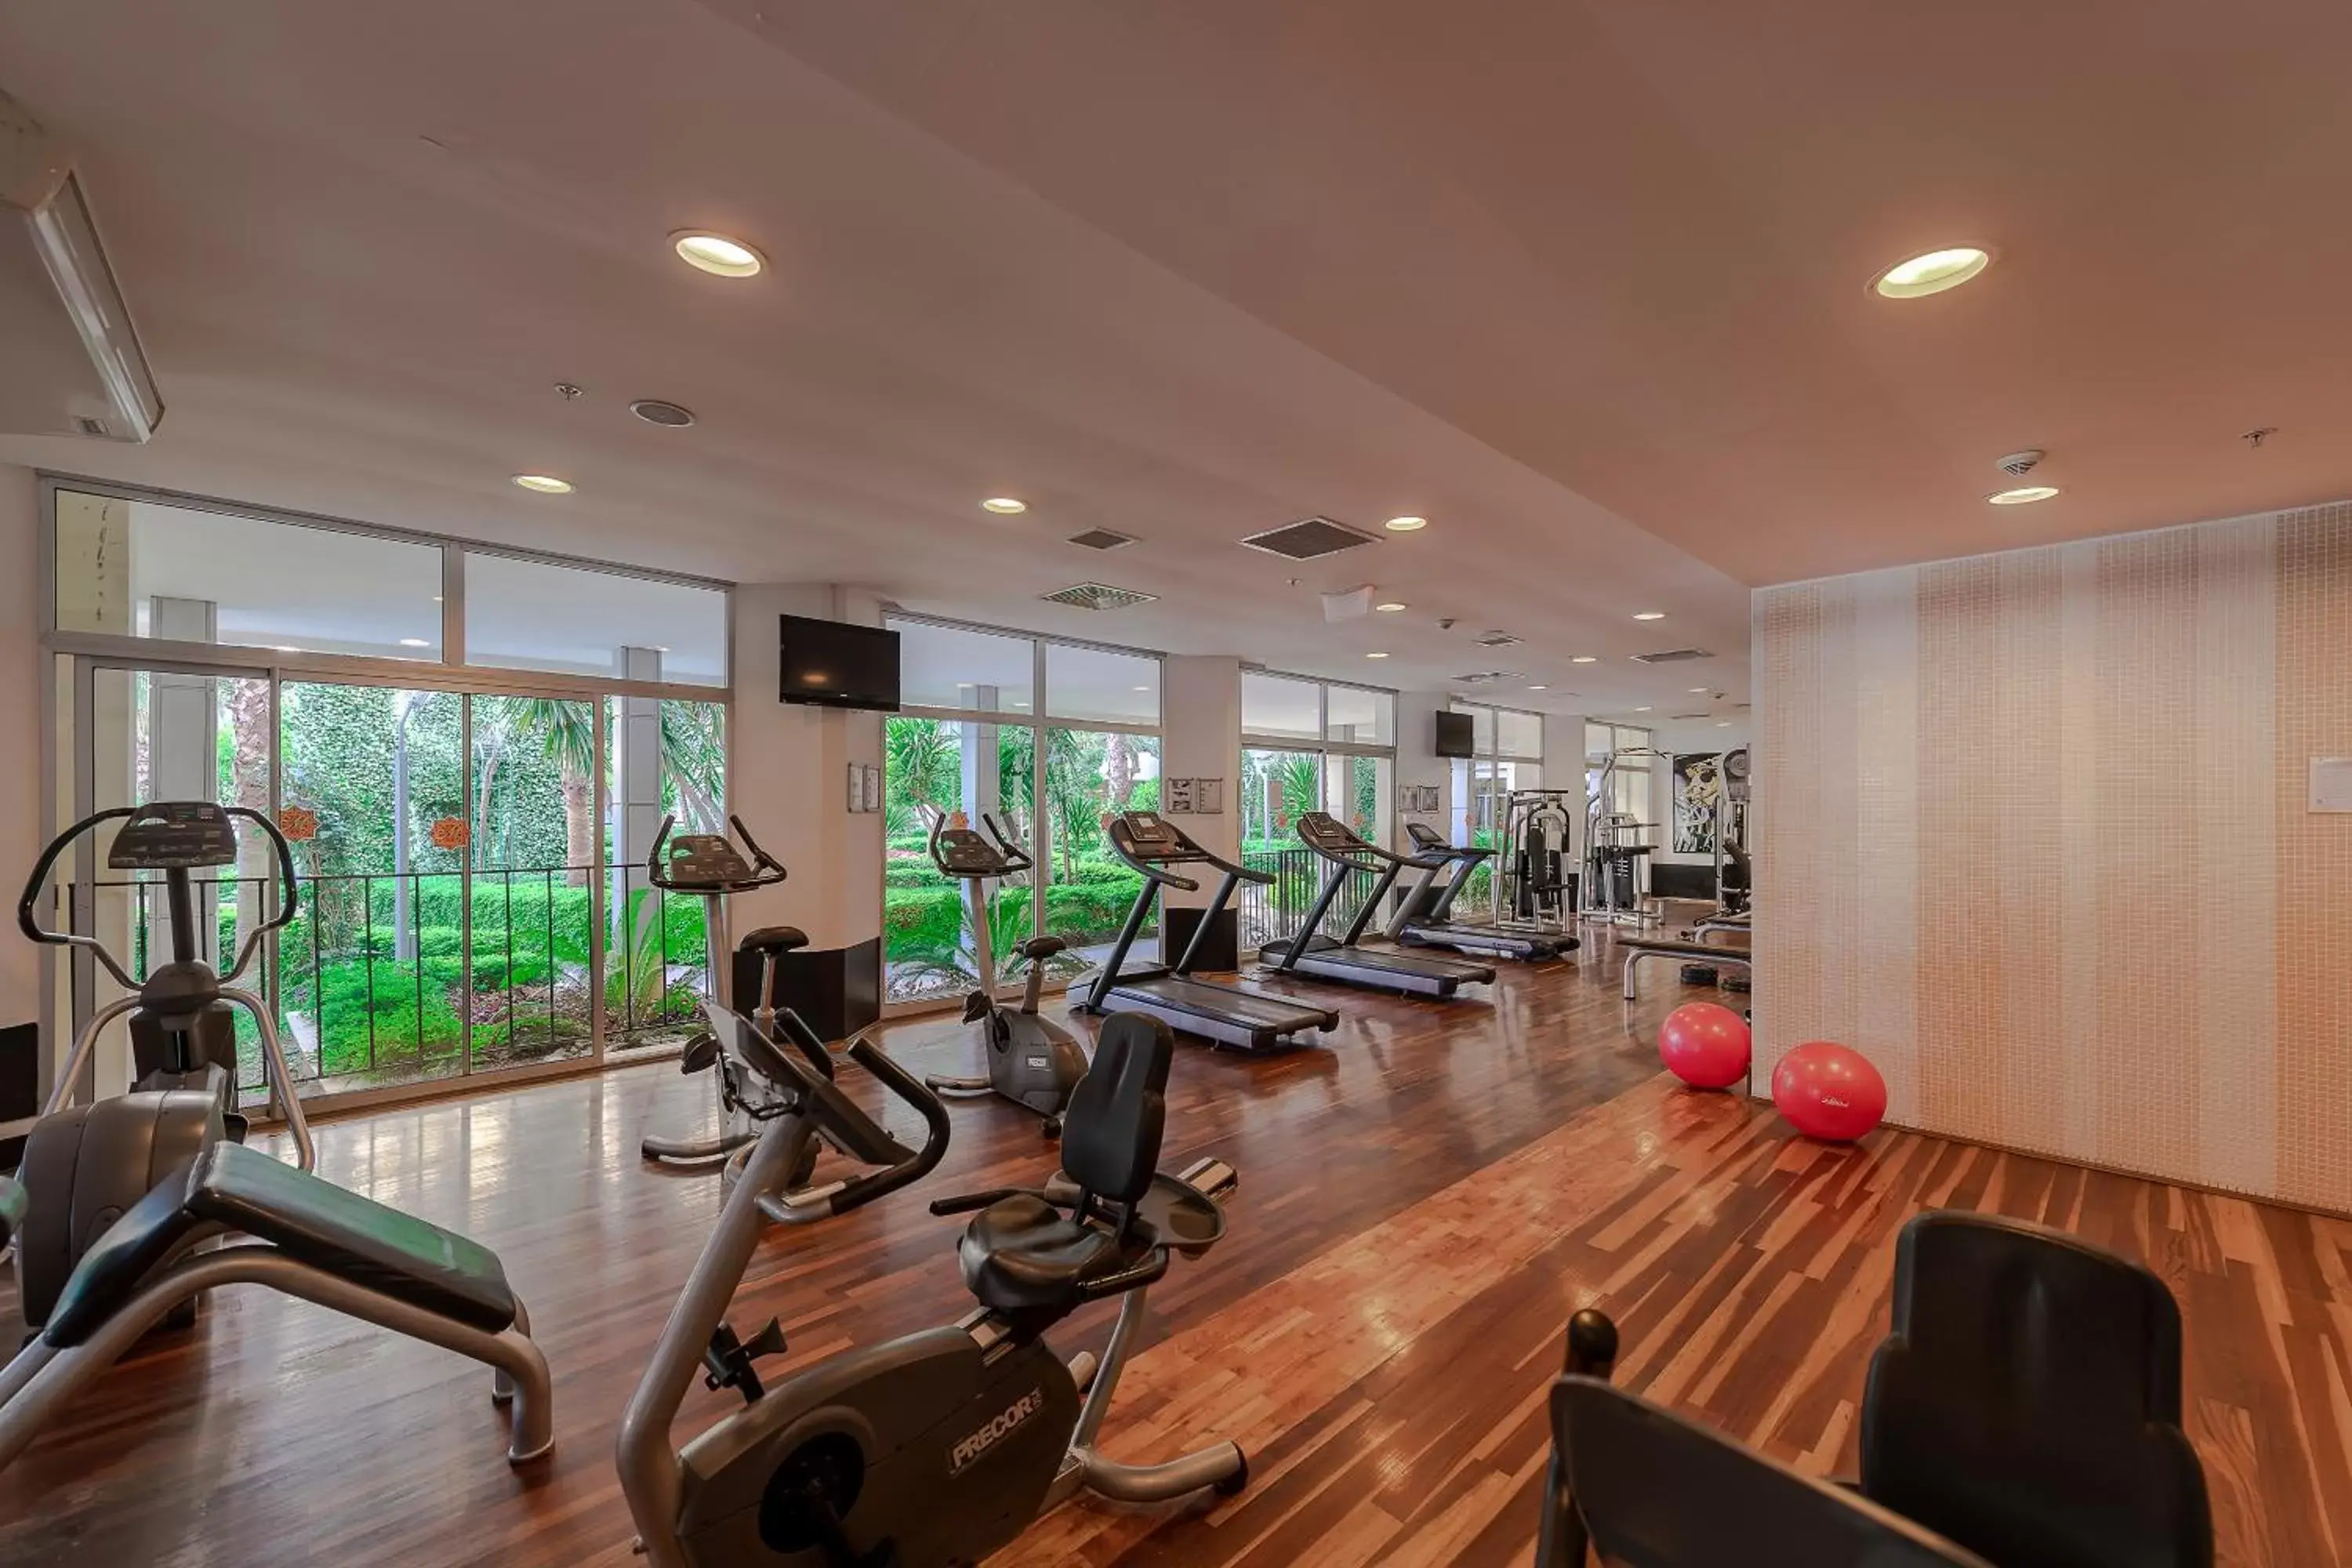 Fitness centre/facilities, Fitness Center/Facilities in Mukarnas Spa & Resort Hotel